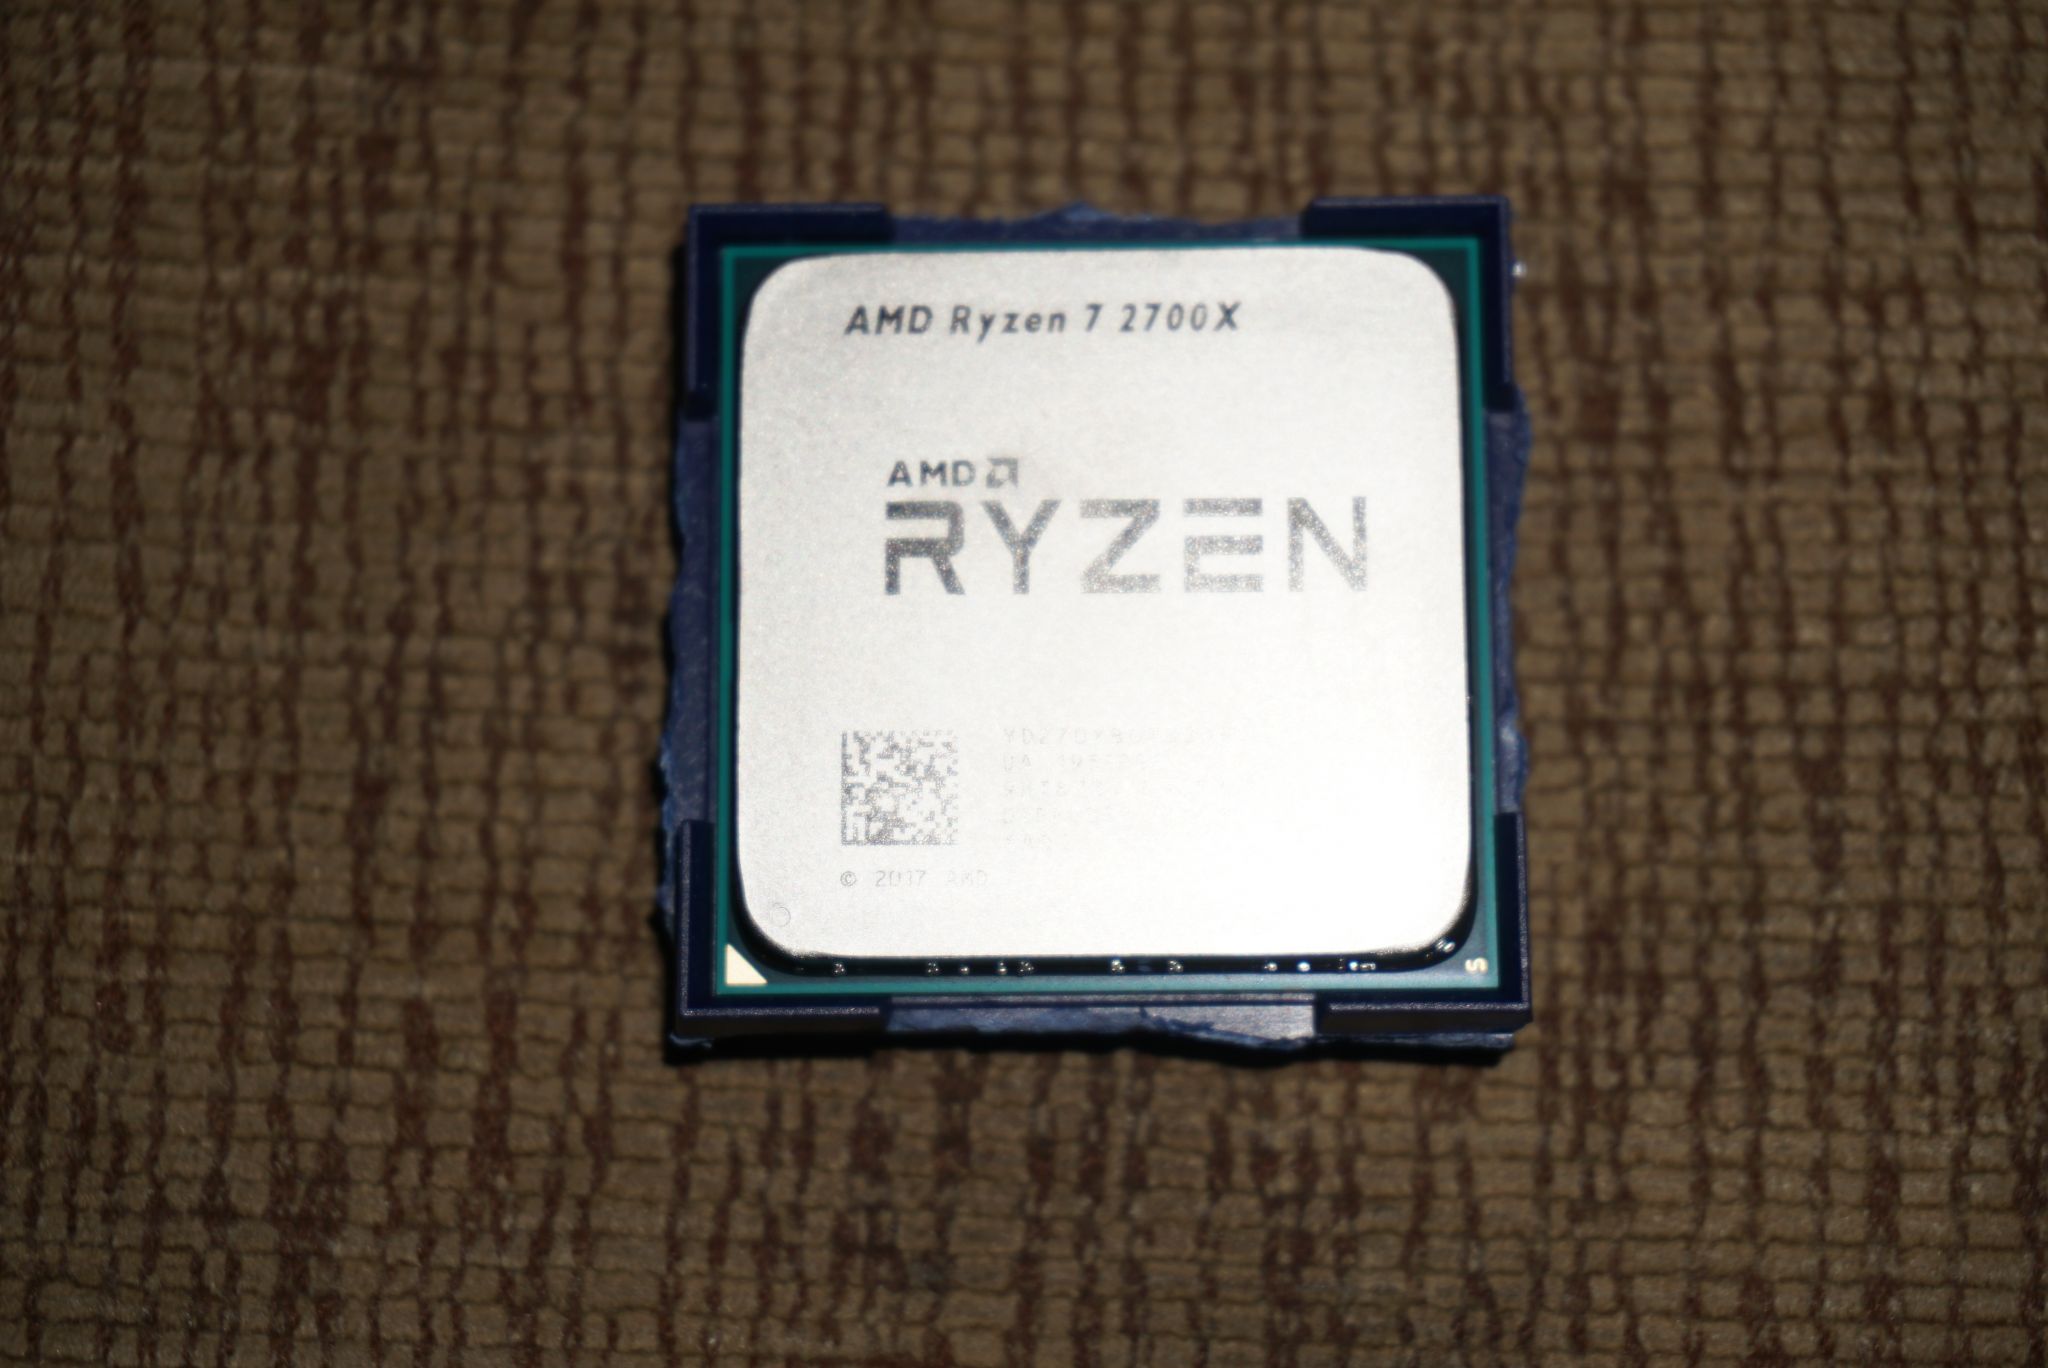 Amd ryzen 7 3700x 8 core. Ryzen 7 2700x. AMD 7 2700. Процессор AMD Ryazan 7 2700 x. AMD Ryzen 7 2700x am4, 8 x 3700 МГЦ.